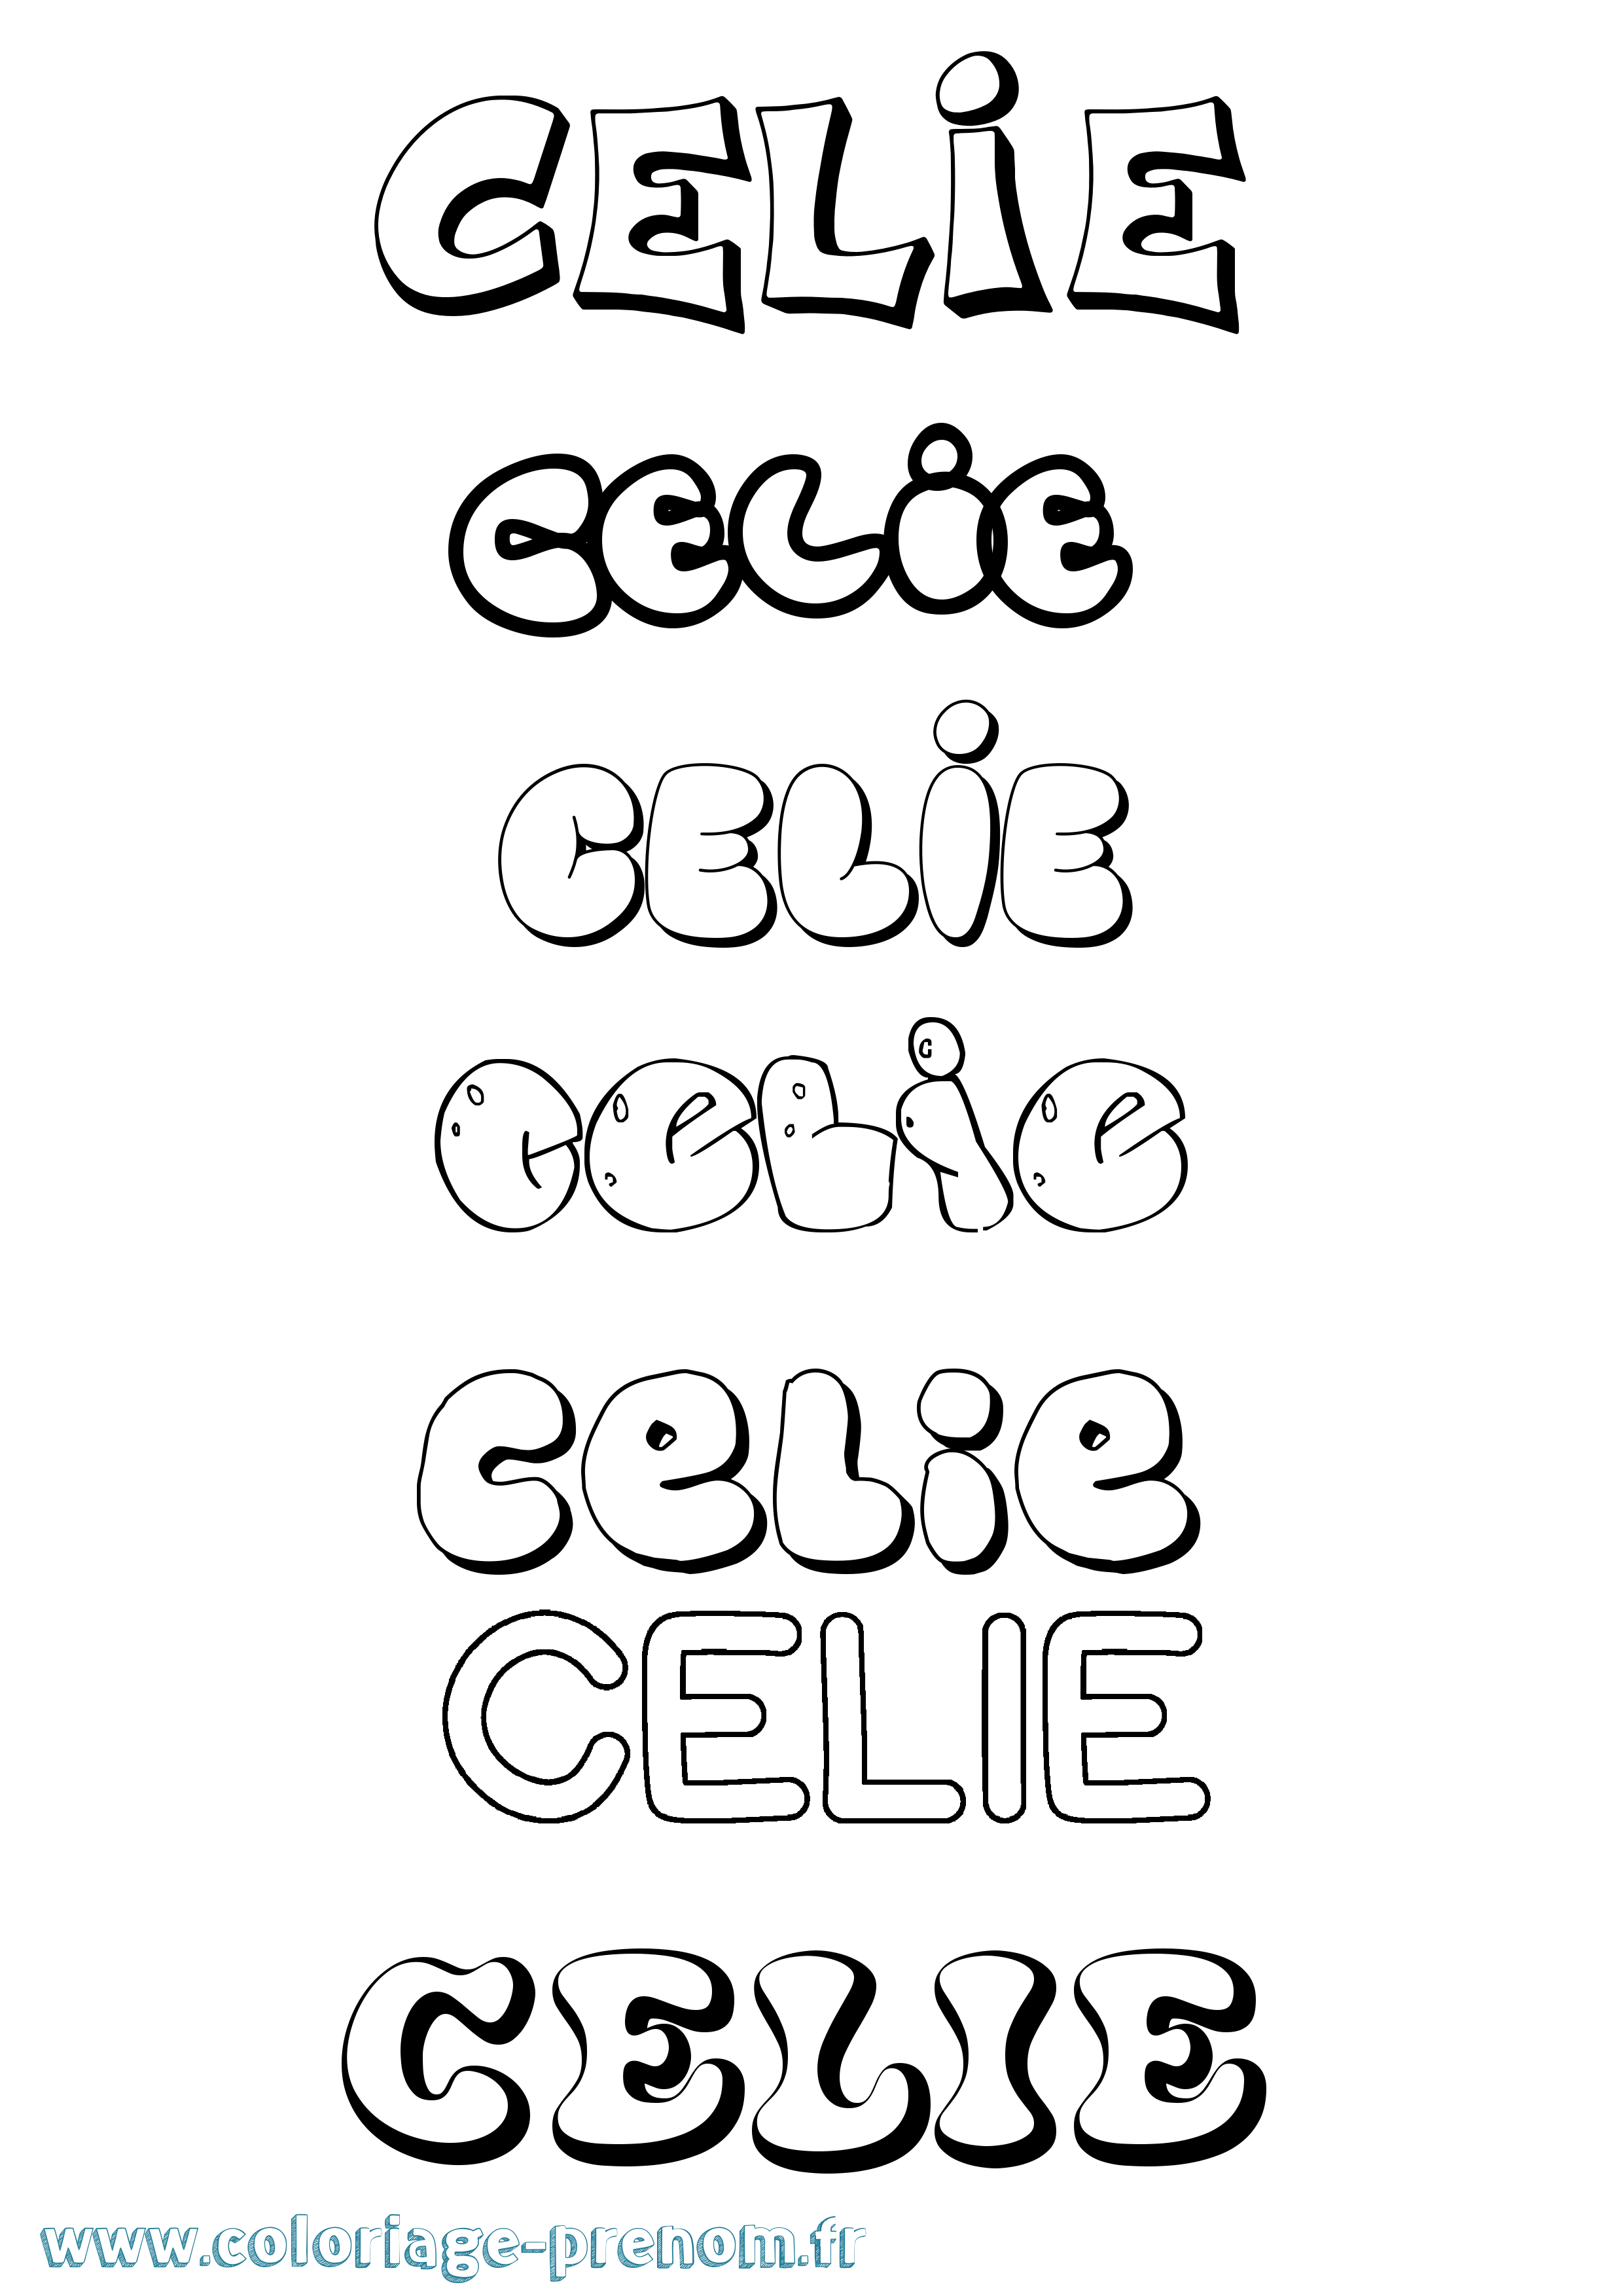 Coloriage prénom Celie Bubble